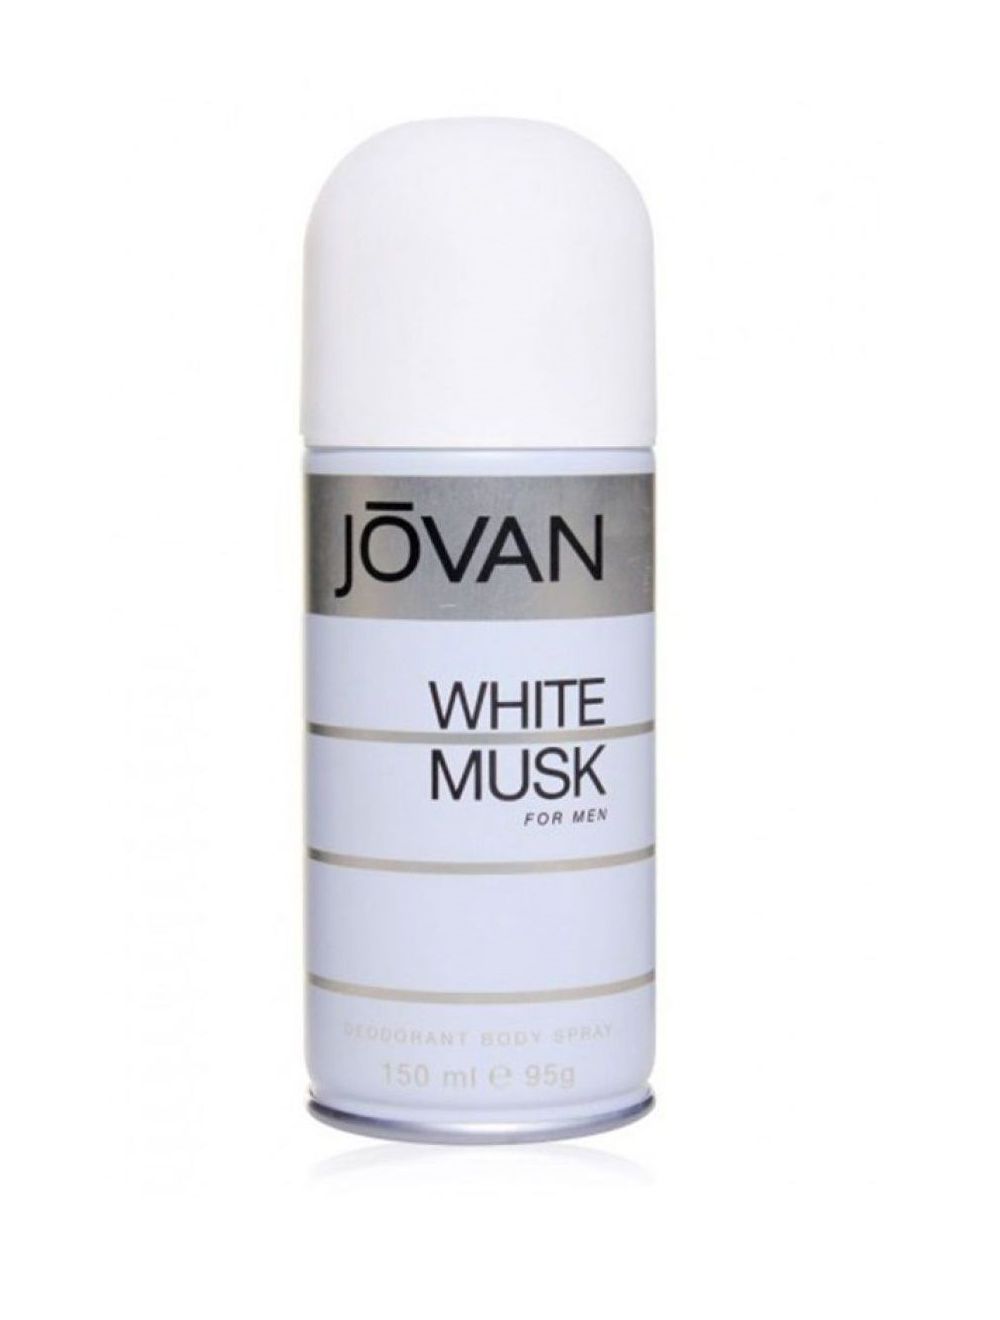 Jovan White Musk Deodorant Body Spray For Men (150ml) - Niram